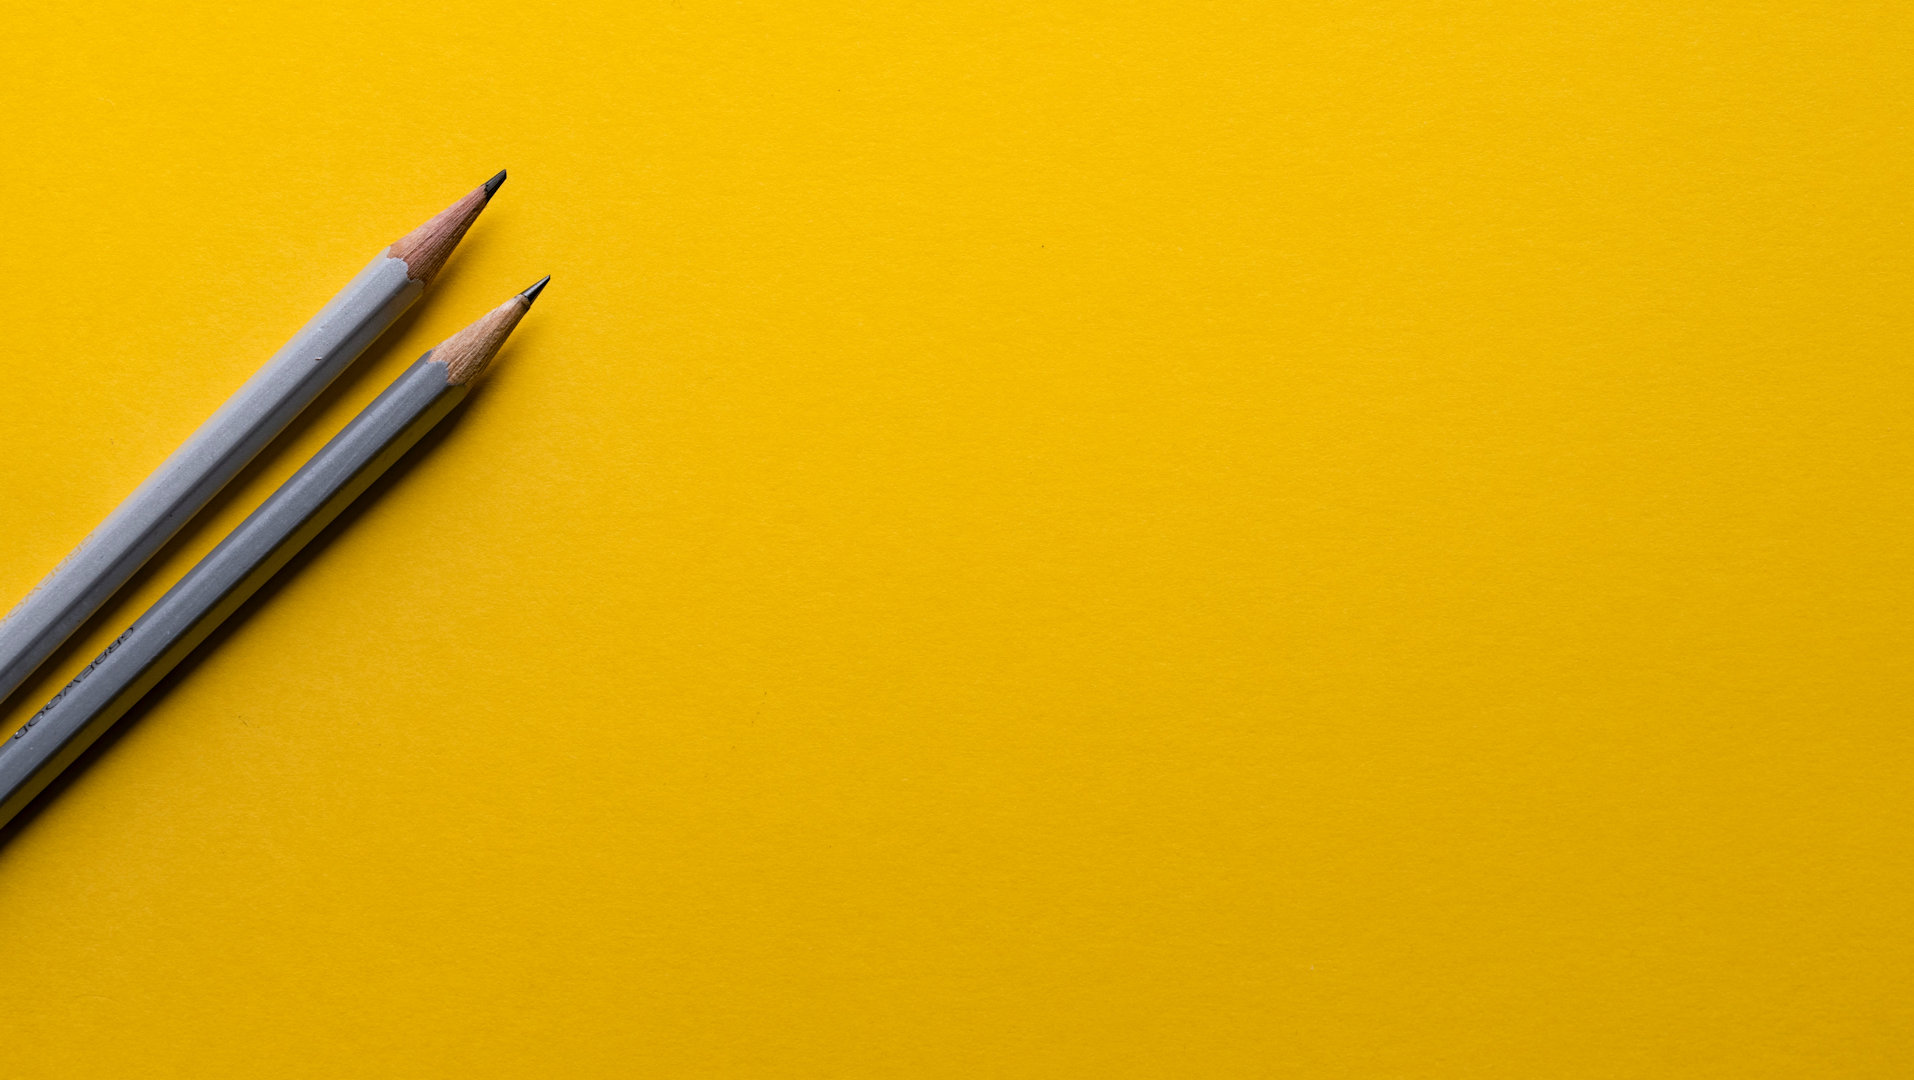 Deux crayons gris sont disposés en diagonale sur un fond jaune.